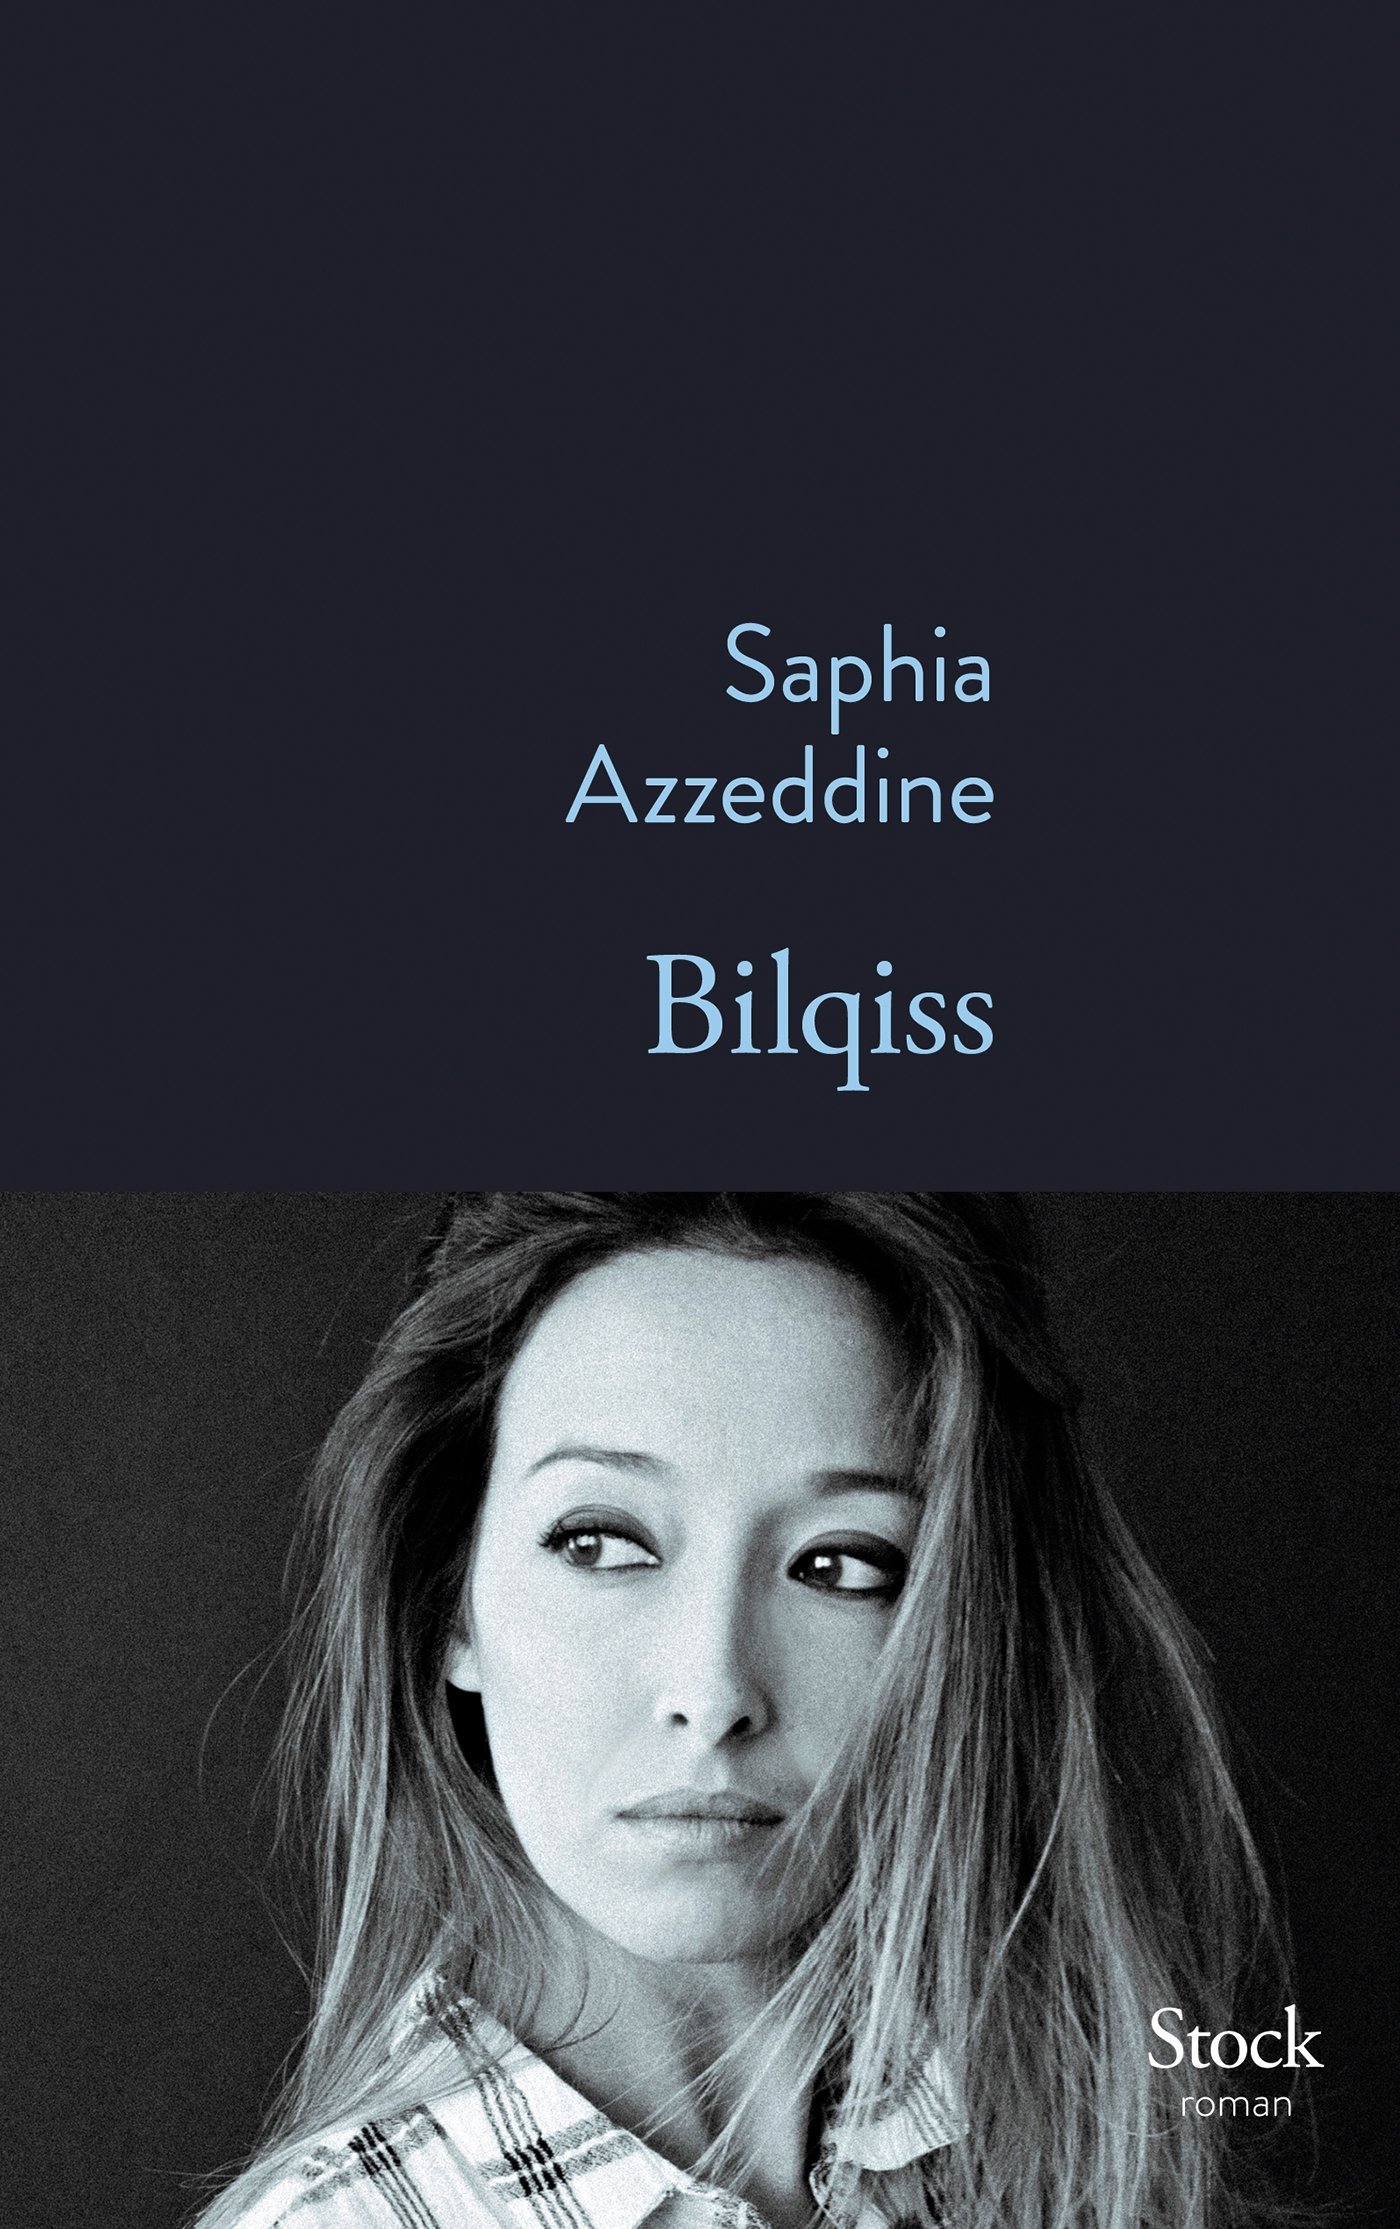 Buchcover Saphia Azzeddine: "Bilqiss"; auf Französisch bei Editions Stock erschienen